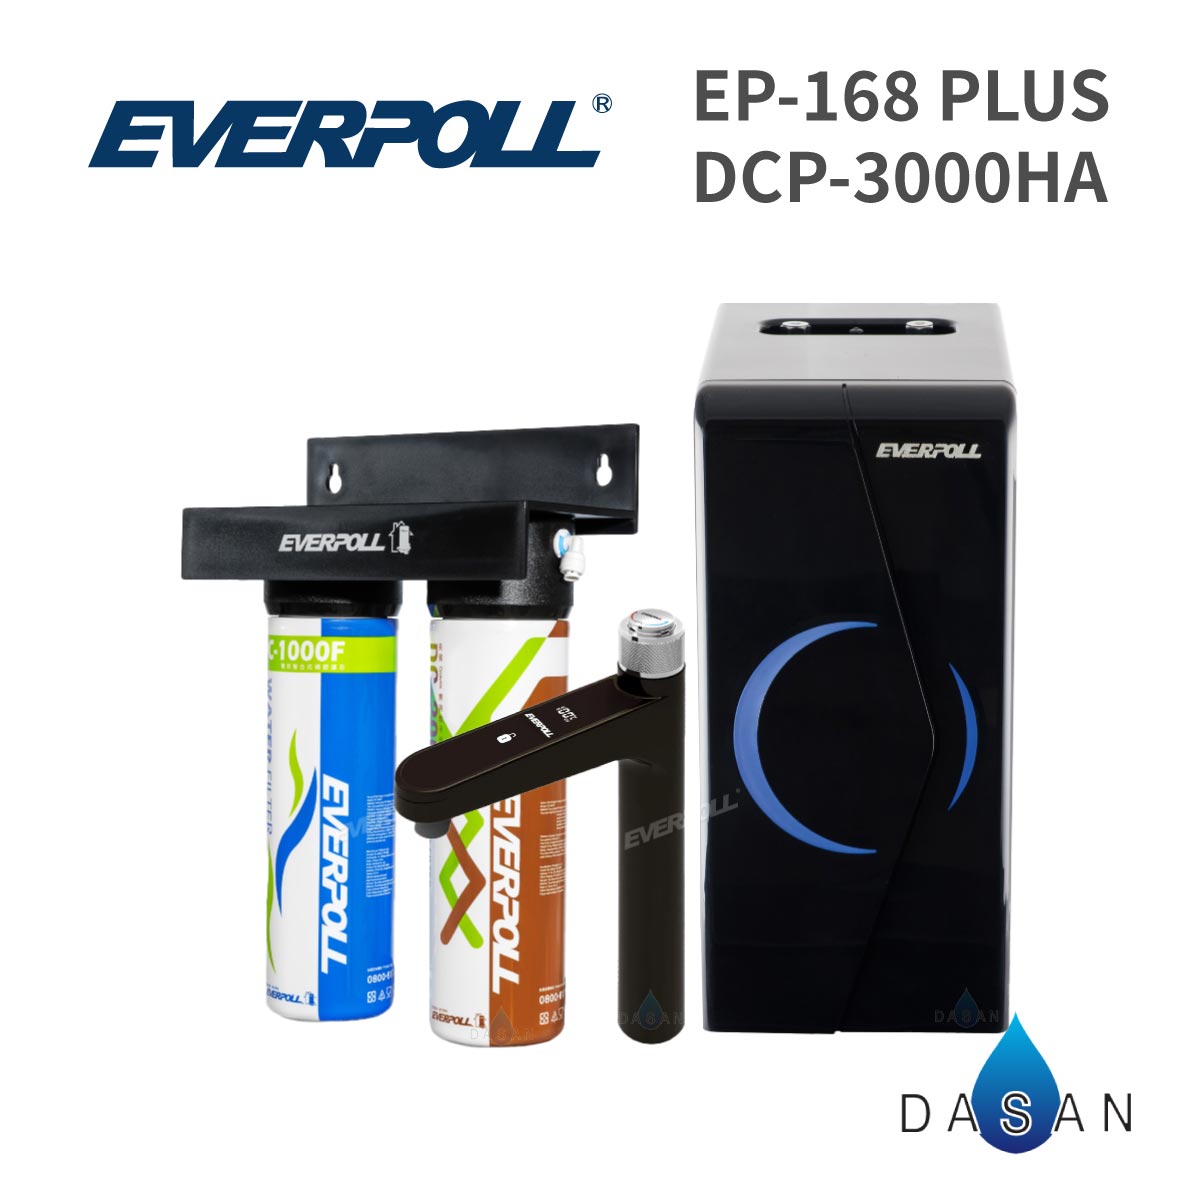 【愛科 EVERPOLL】EP-168 PLUS廚下型雙溫無壓飲水機+DCP-3000HA 經典複合淨水器-黑武士